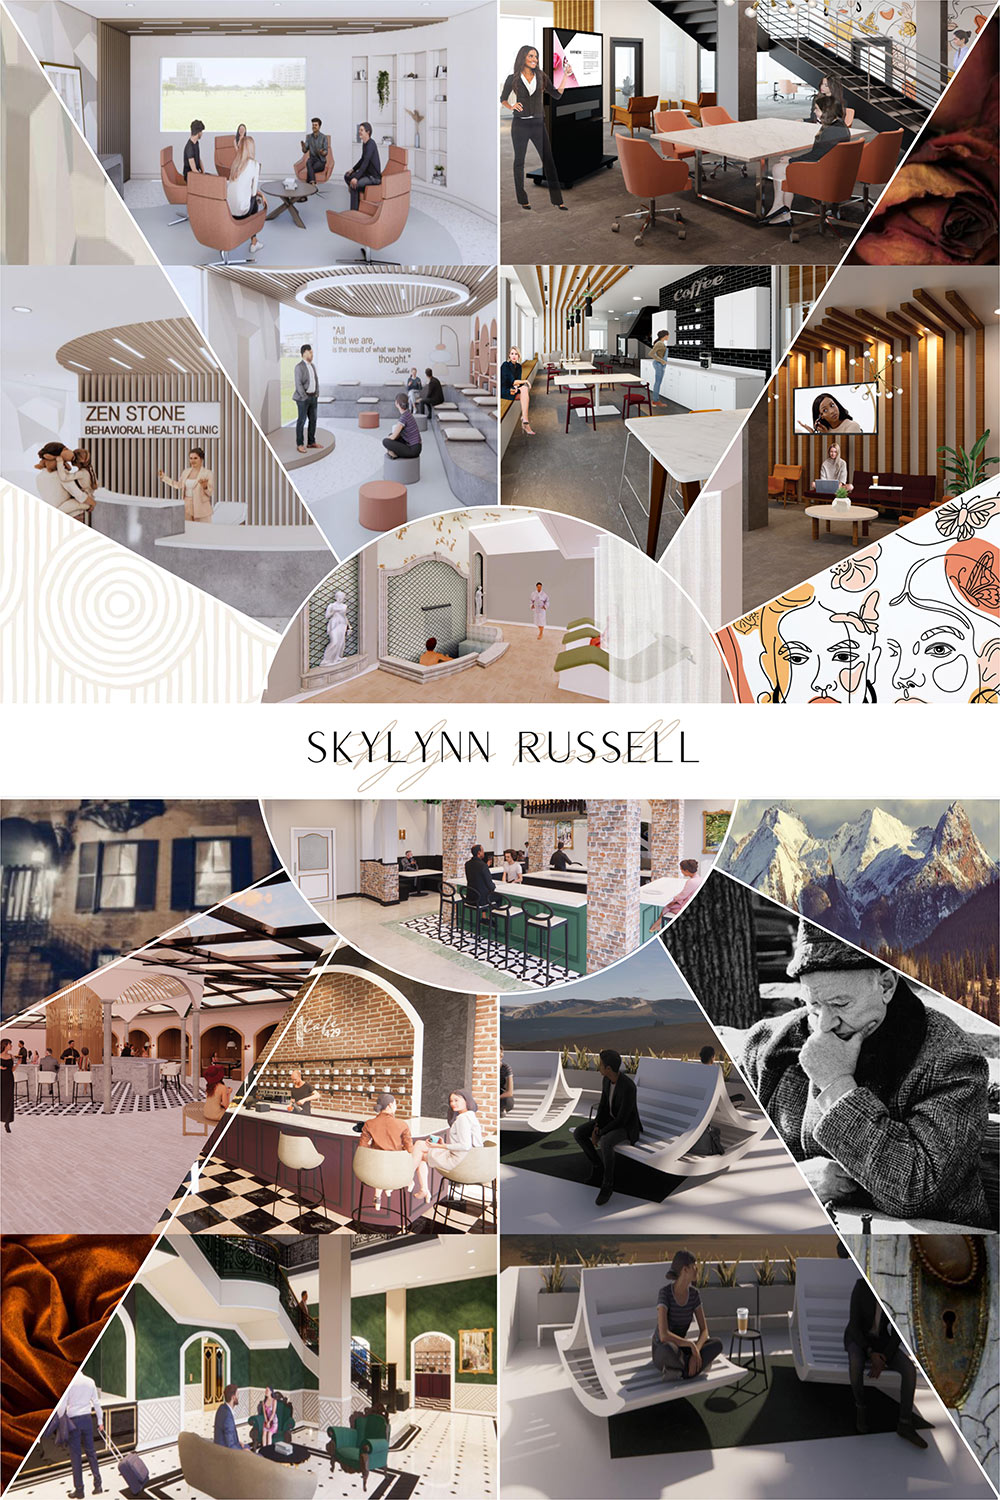 Skylynn Russell's interior design senior exhibit board